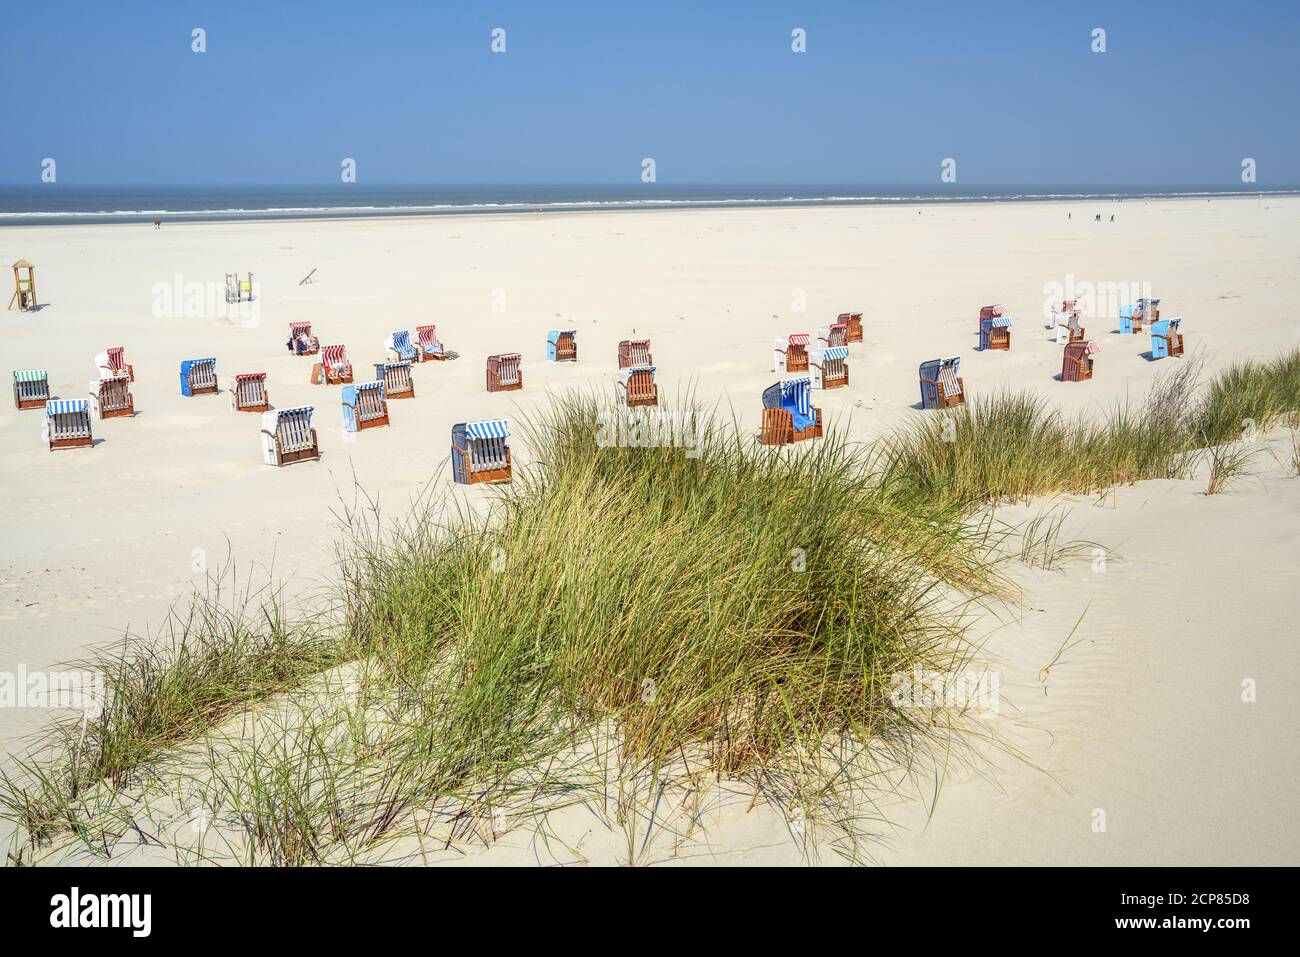 Playa en la Isla Juist, Frisia Oriental, Islas Frisias del este, Baja Sajonia, Costa del Mar del Norte, Norte de Alemania, Alemania, Europa Foto de stock